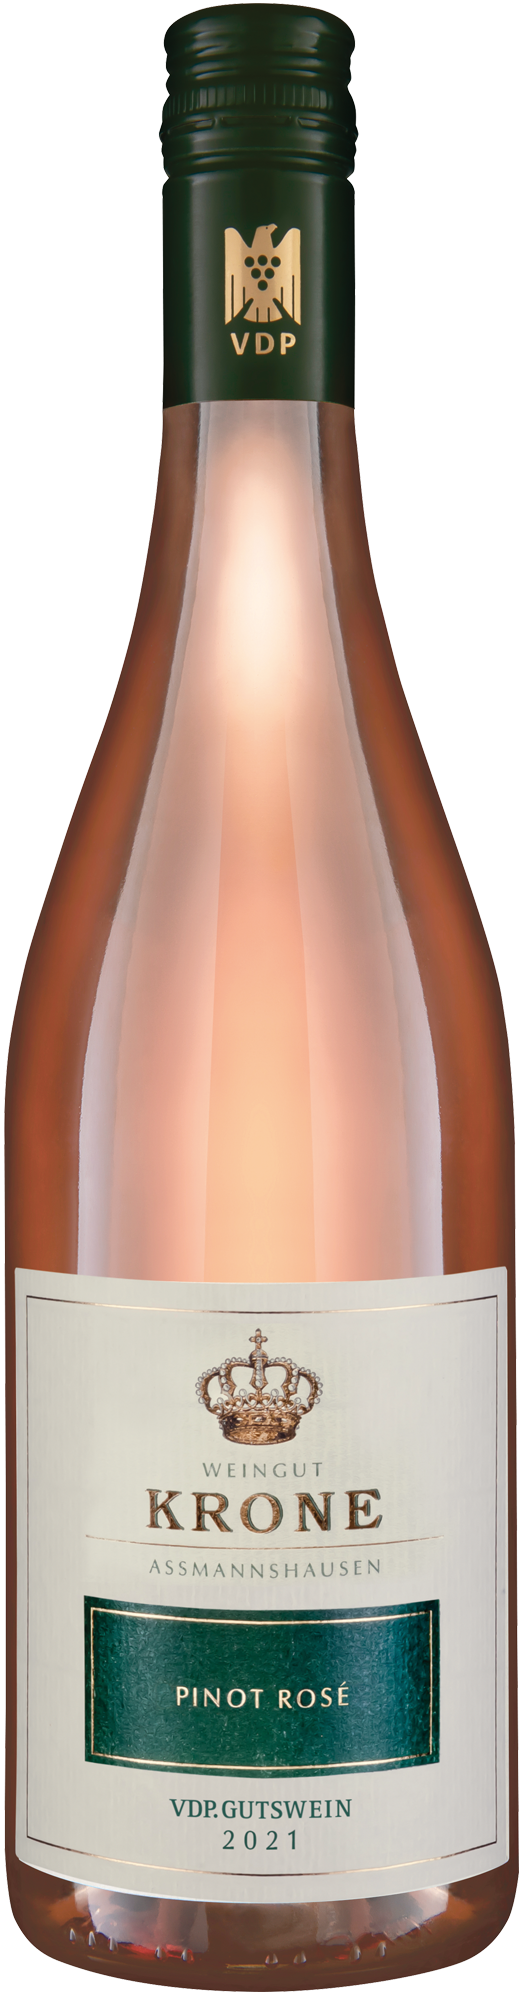 2021 Krone Pinot Rosé trocken